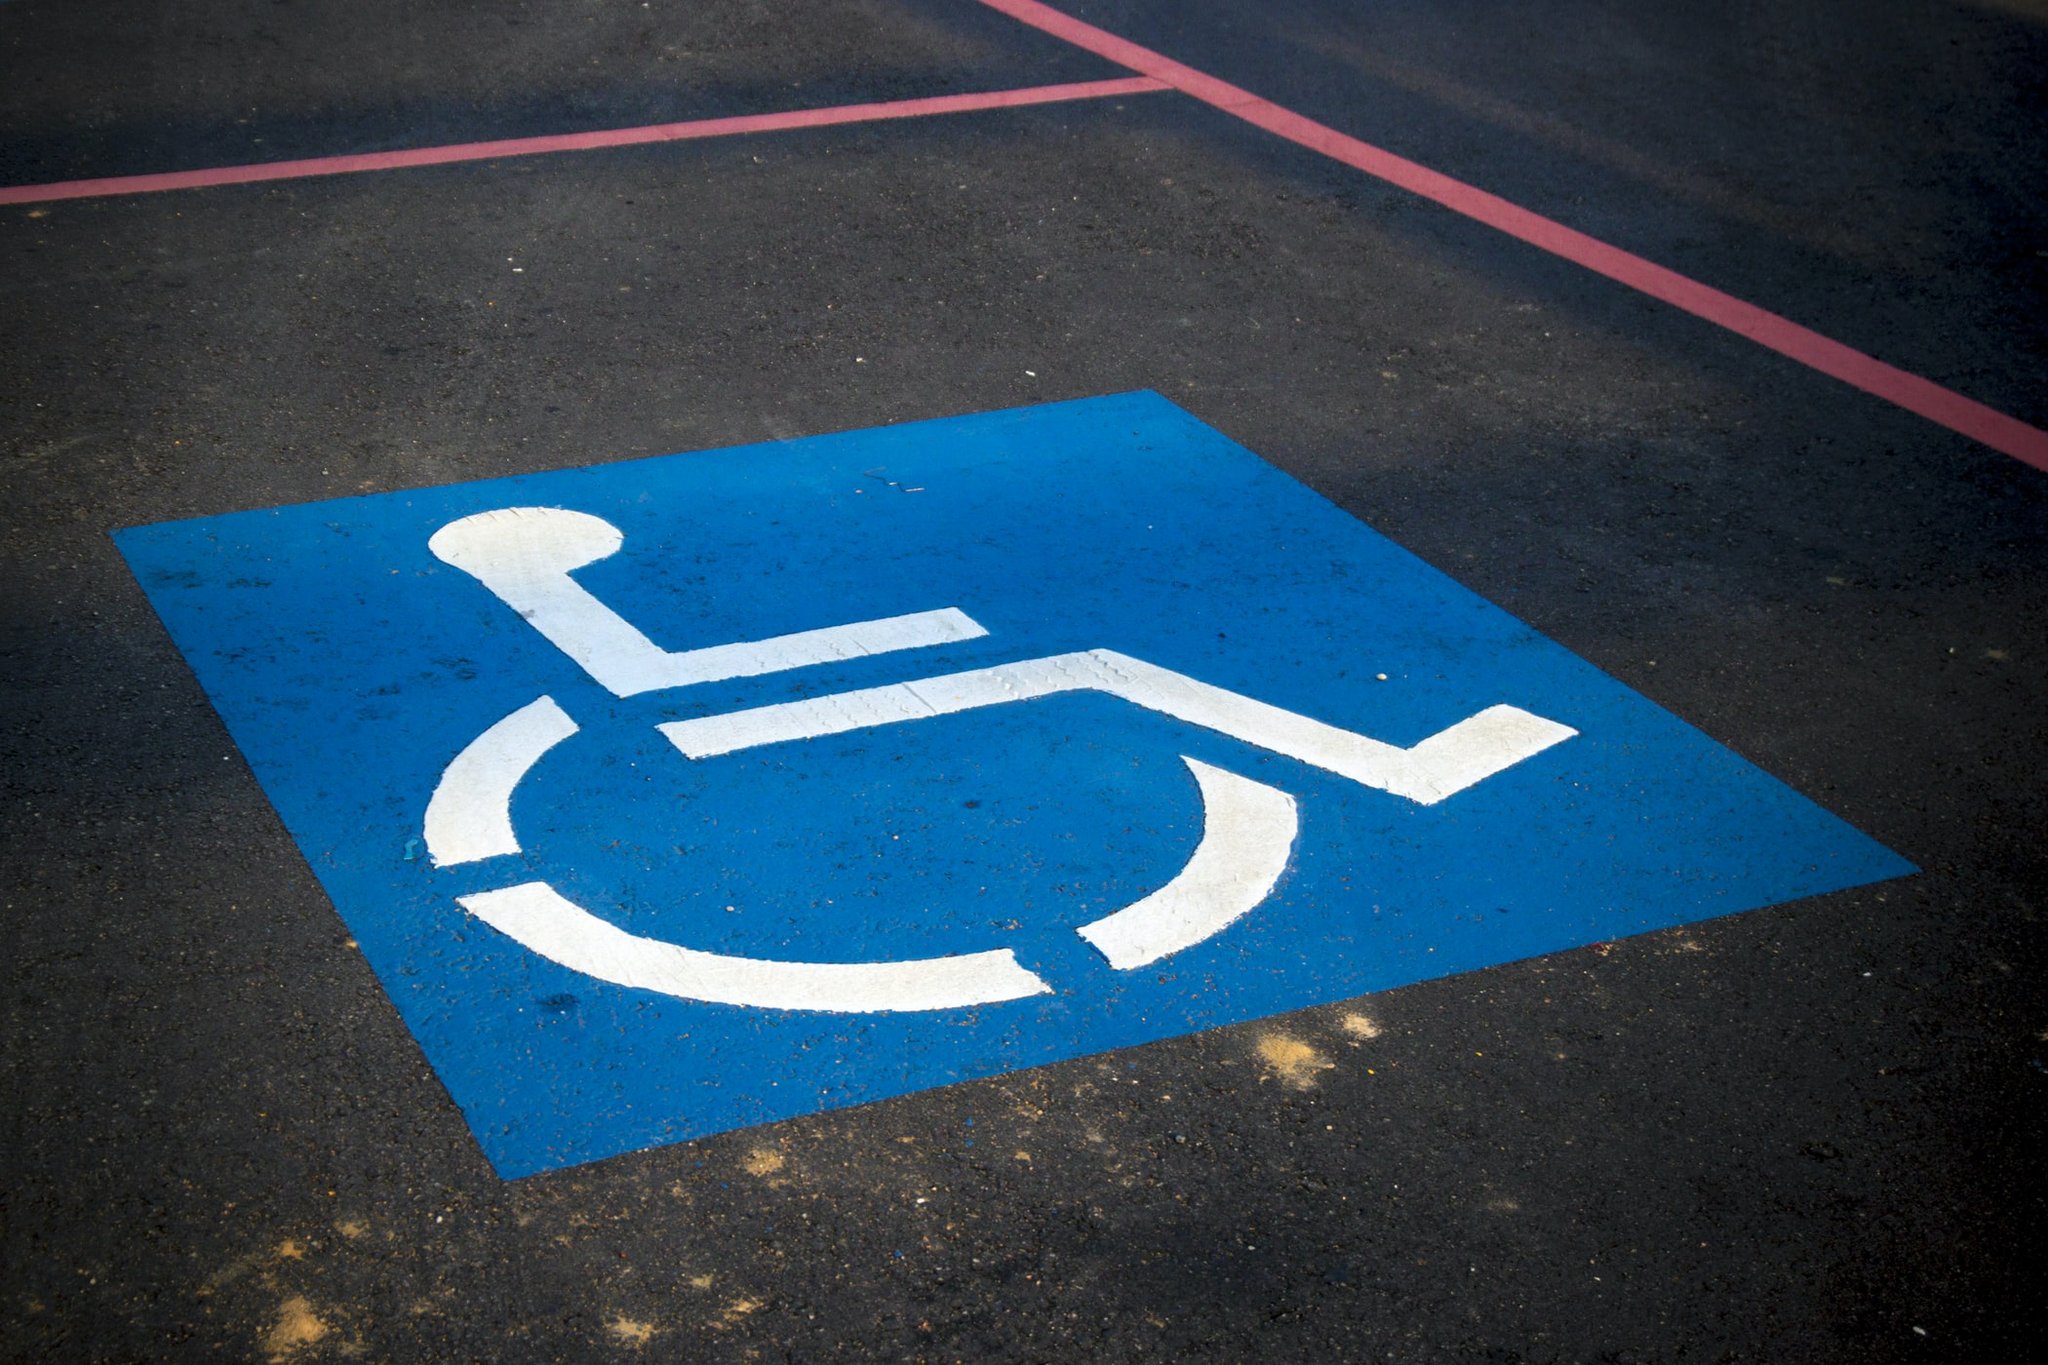 Das Bild zeigt eine Kennzeichnung für einen Behindertenparkplatz auf dem Boden